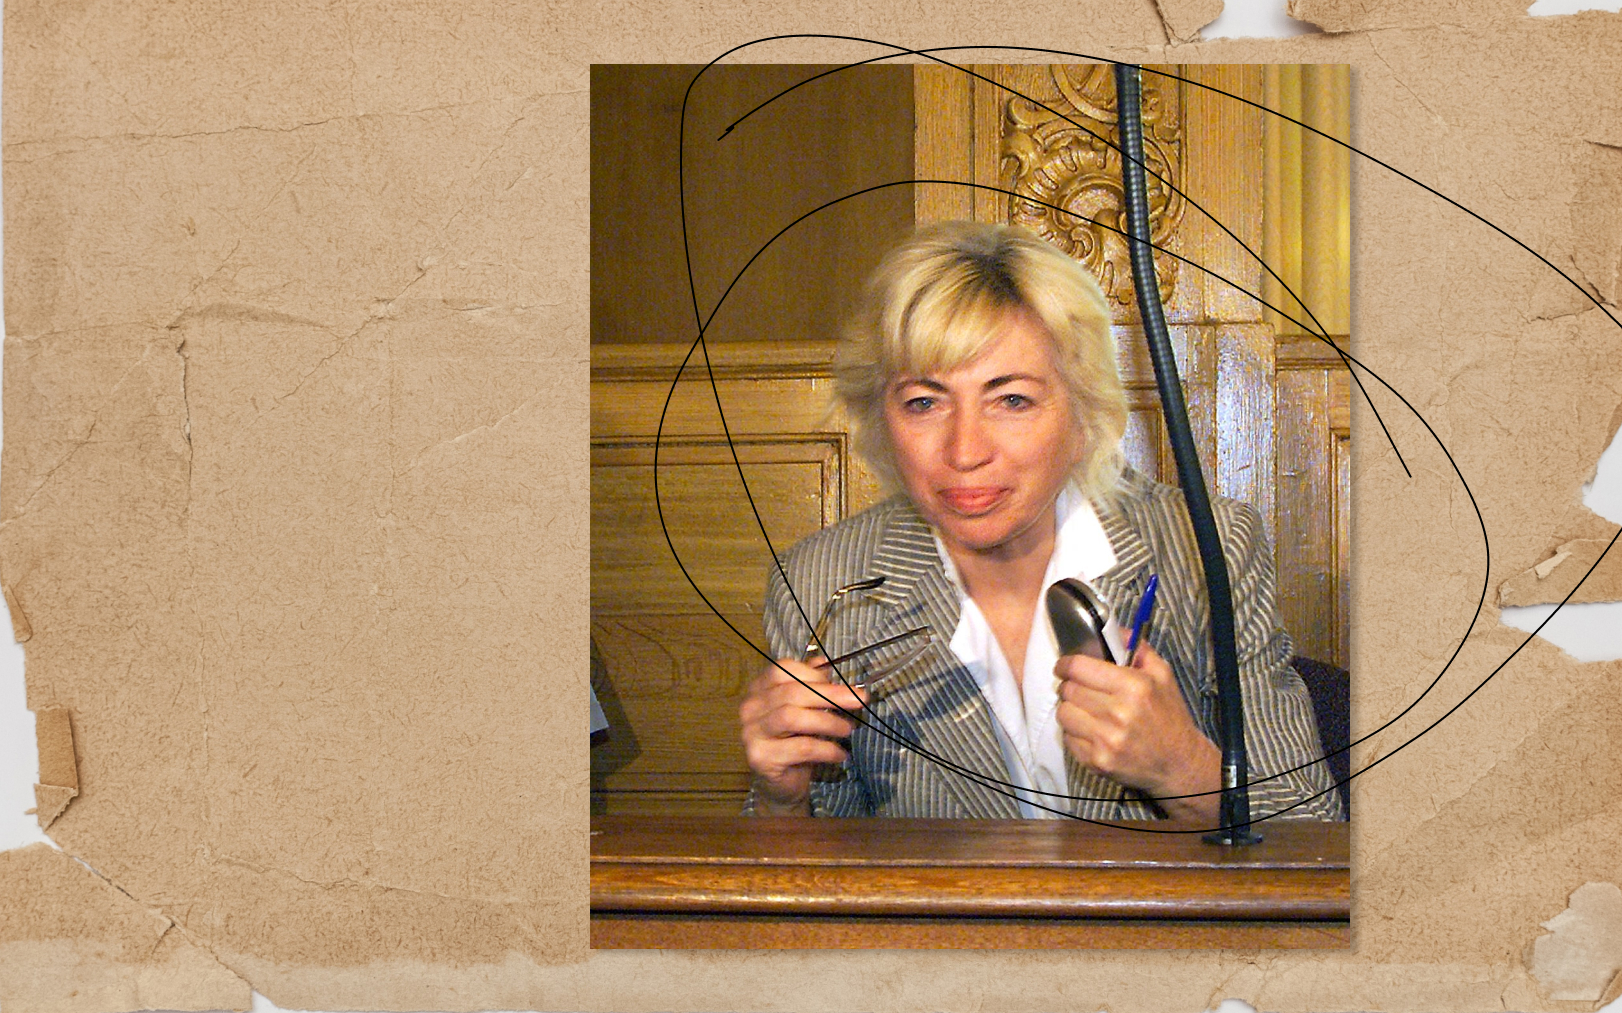 Rodica Negroiu s'installant dans le box des accusés de la cour d'assises de Meurthe-et-Moselle. AFP/Damien Meyer